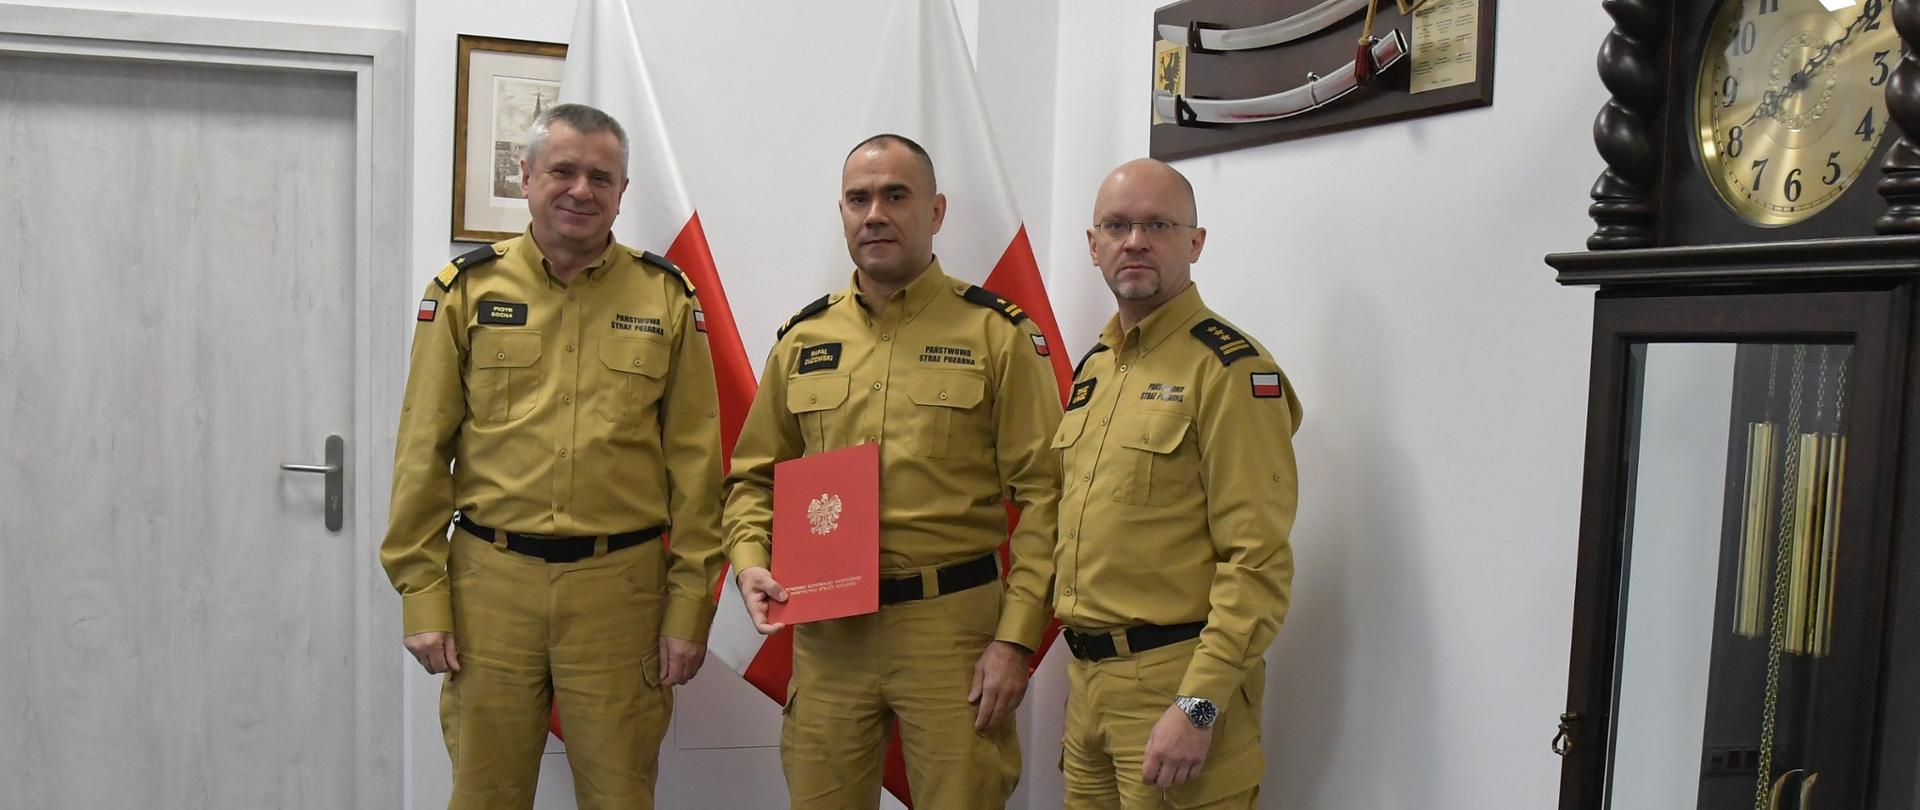 Trzech funkcjonariuszy Państwowej Straży Pożarnej stoi obok siebie strażak stojący w środku trzyma czerwoną teczkę za mężczyznami ustawione są flagi Polski na ścianie wisi obraz oraz szabla niedaleko ustawiony jest zegar. 